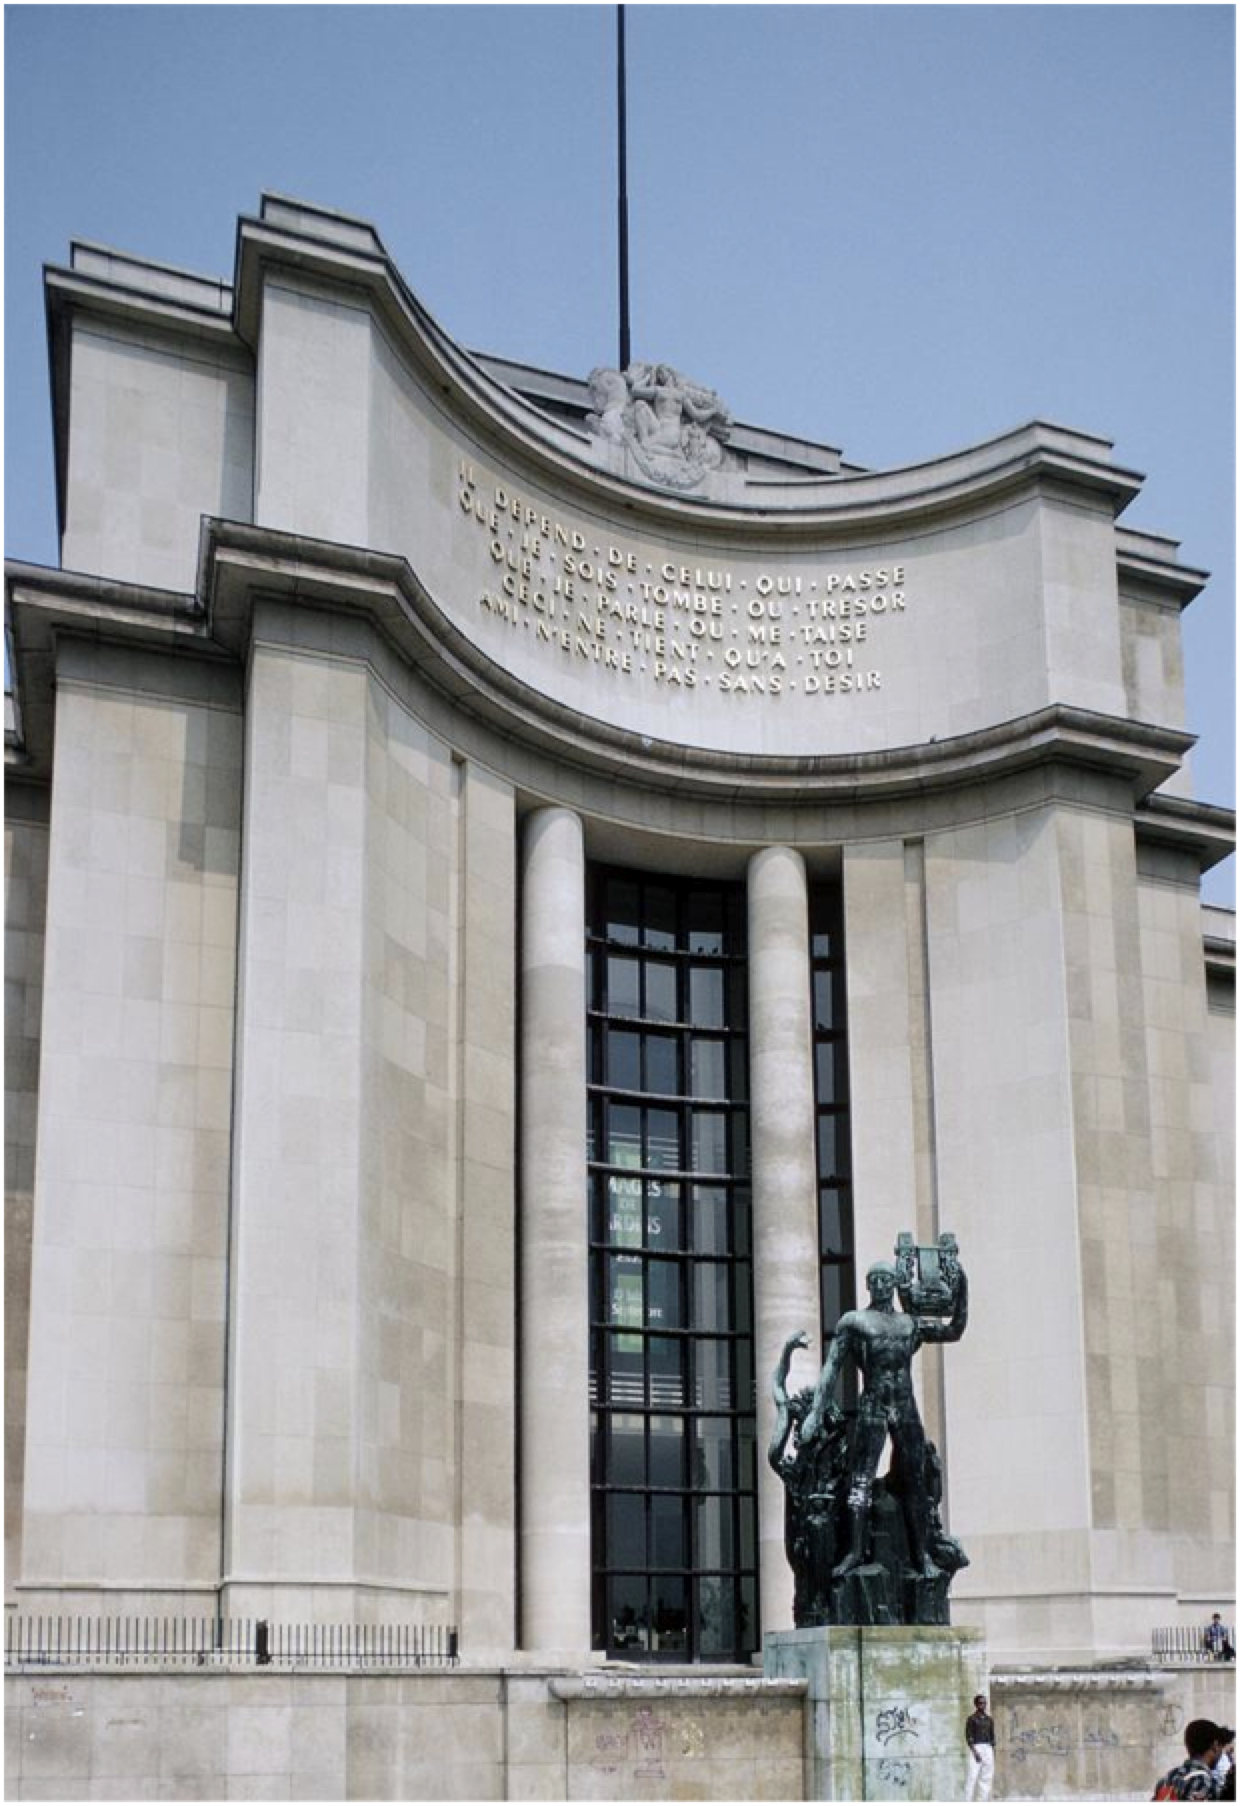 Cronan, Figure 1. Entrance to Palais de Chaillot, Paris.